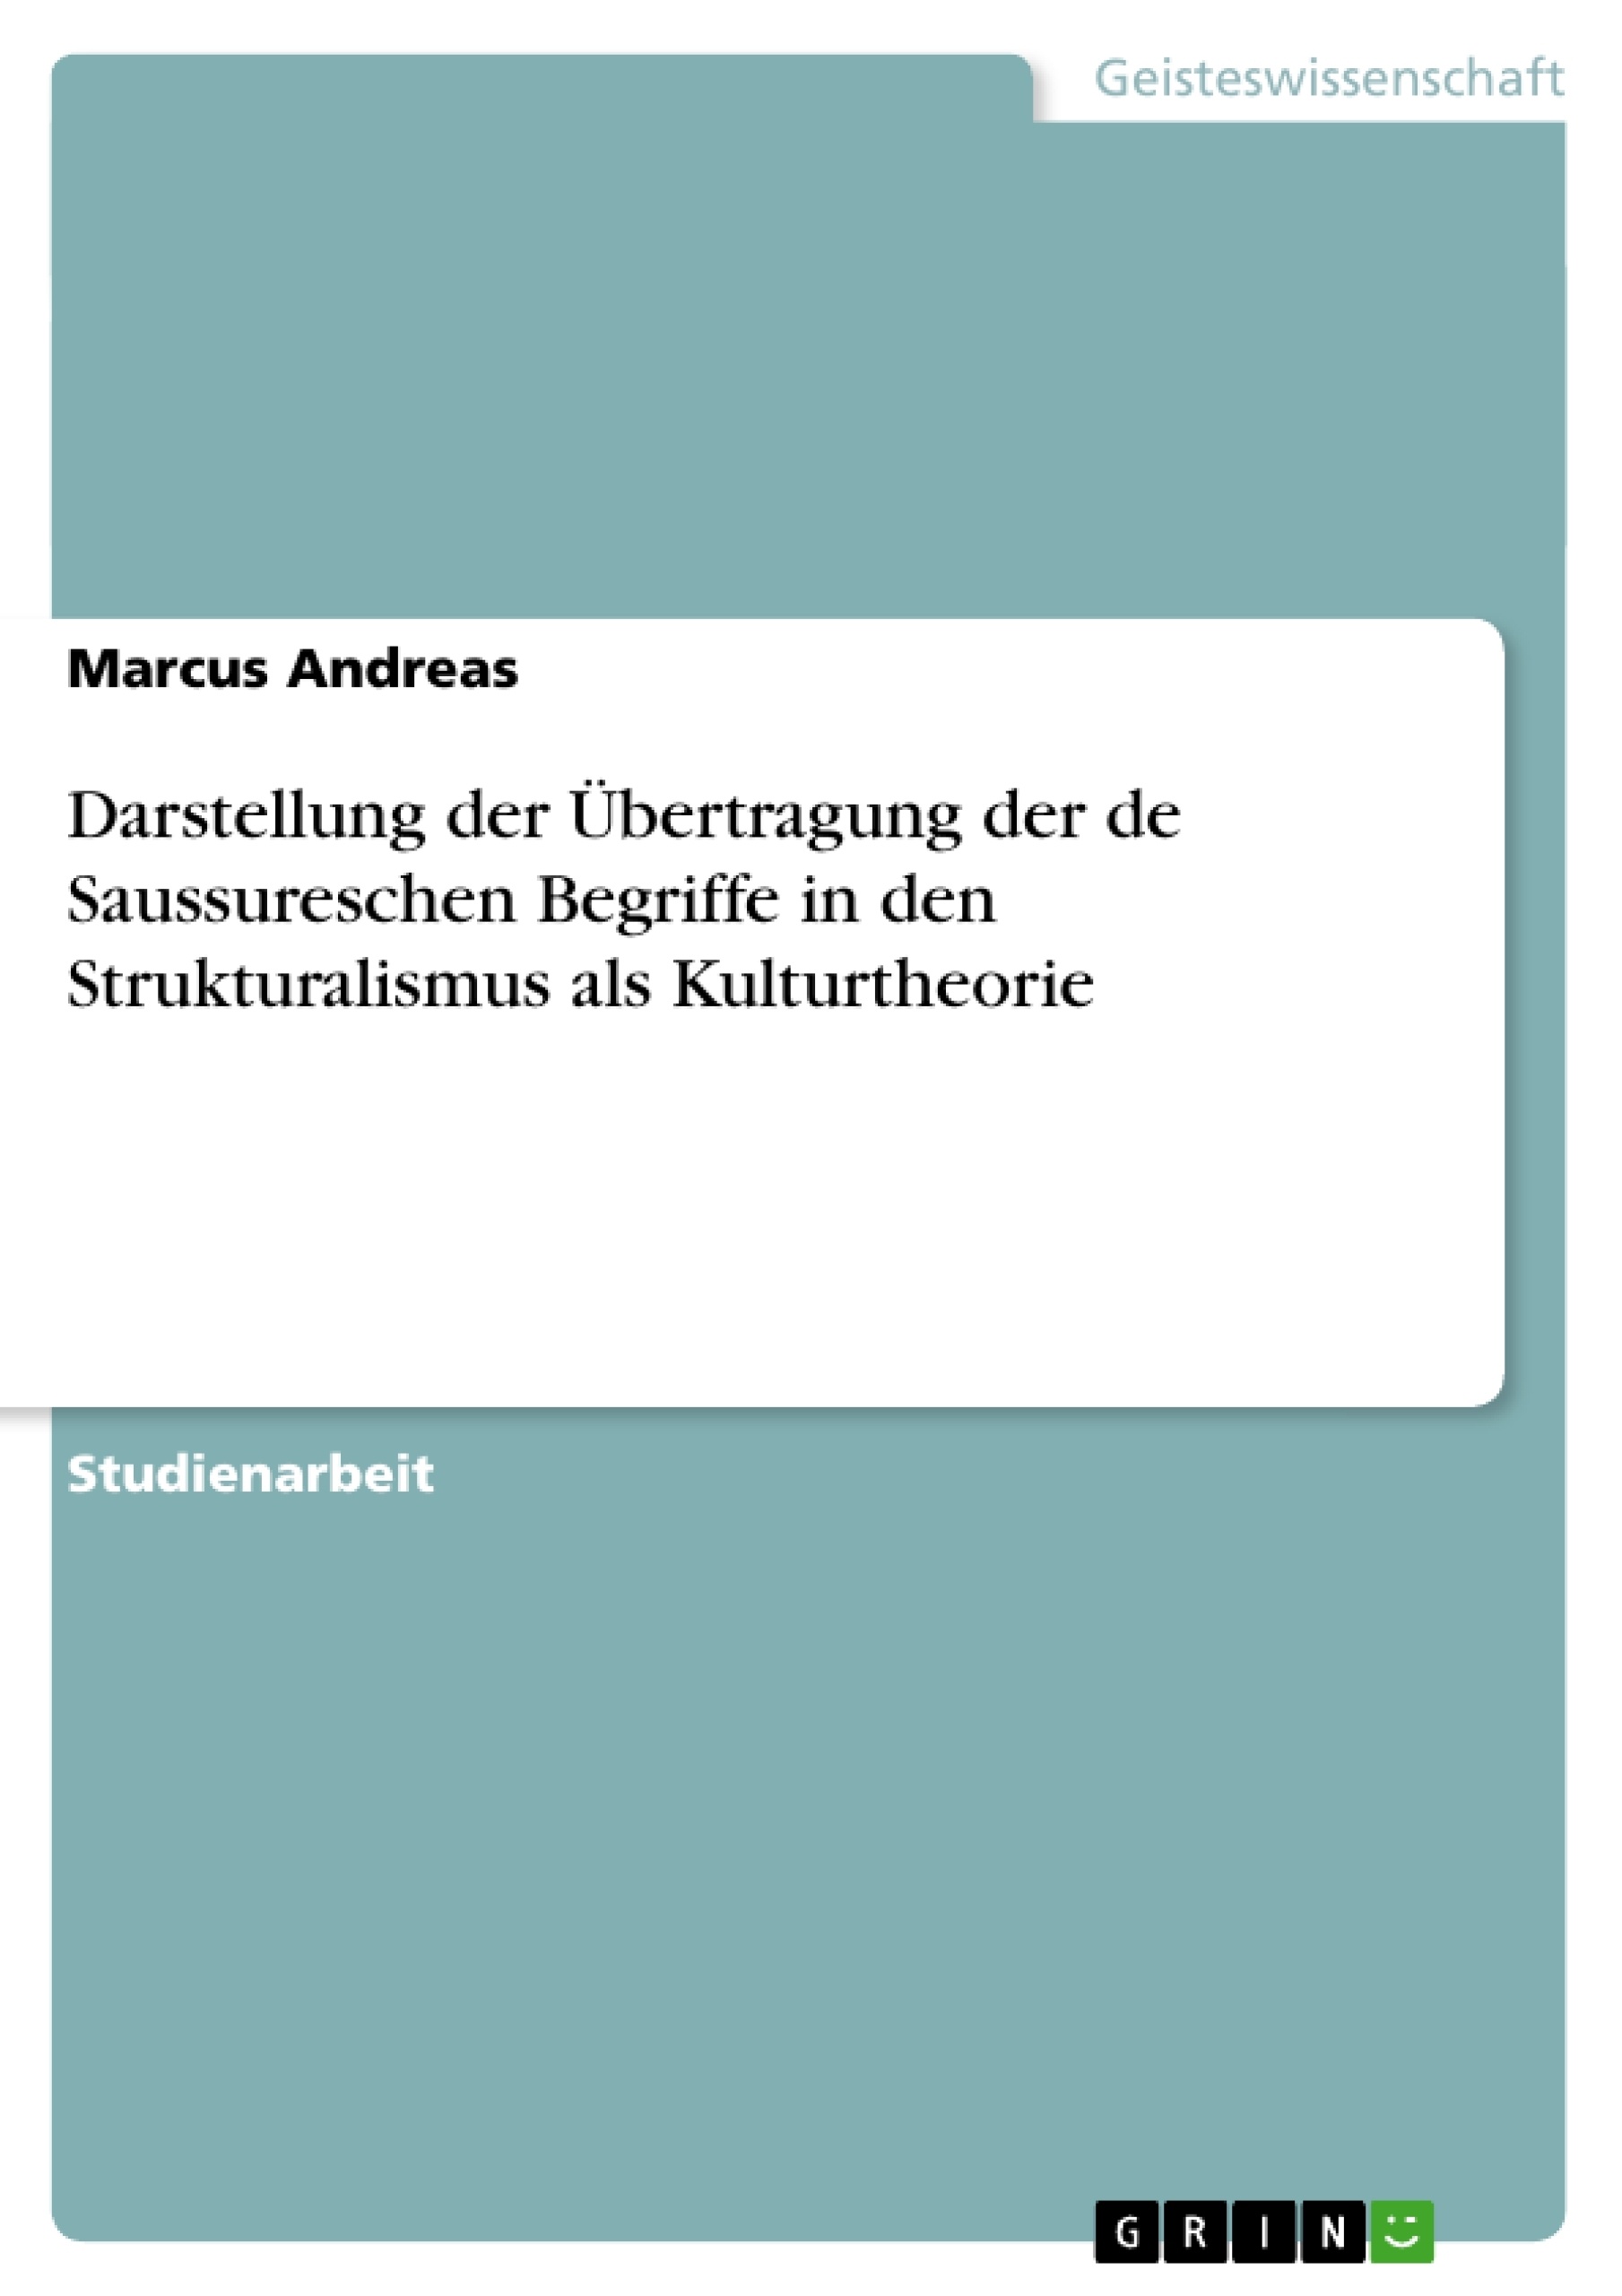 Titre: Darstellung der Übertragung der de Saussureschen Begriffe in den Strukturalismus als Kulturtheorie